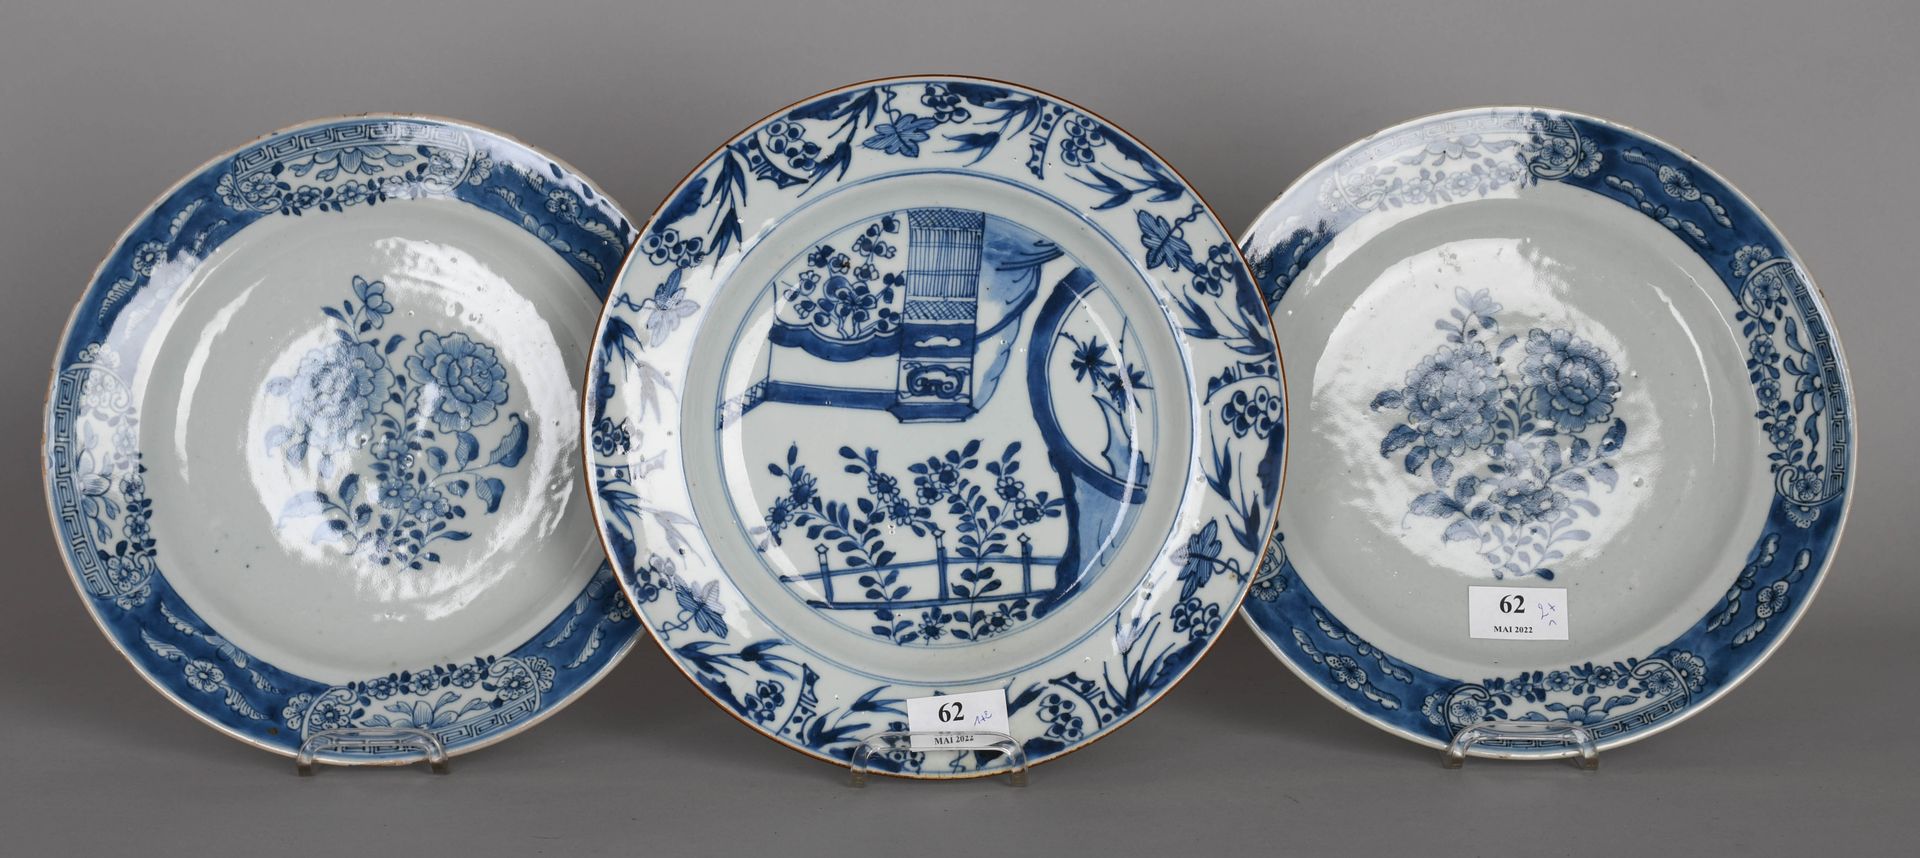 Null China, siglo XVIII

Un par de platos redondos de porcelana blanca y azul co&hellip;